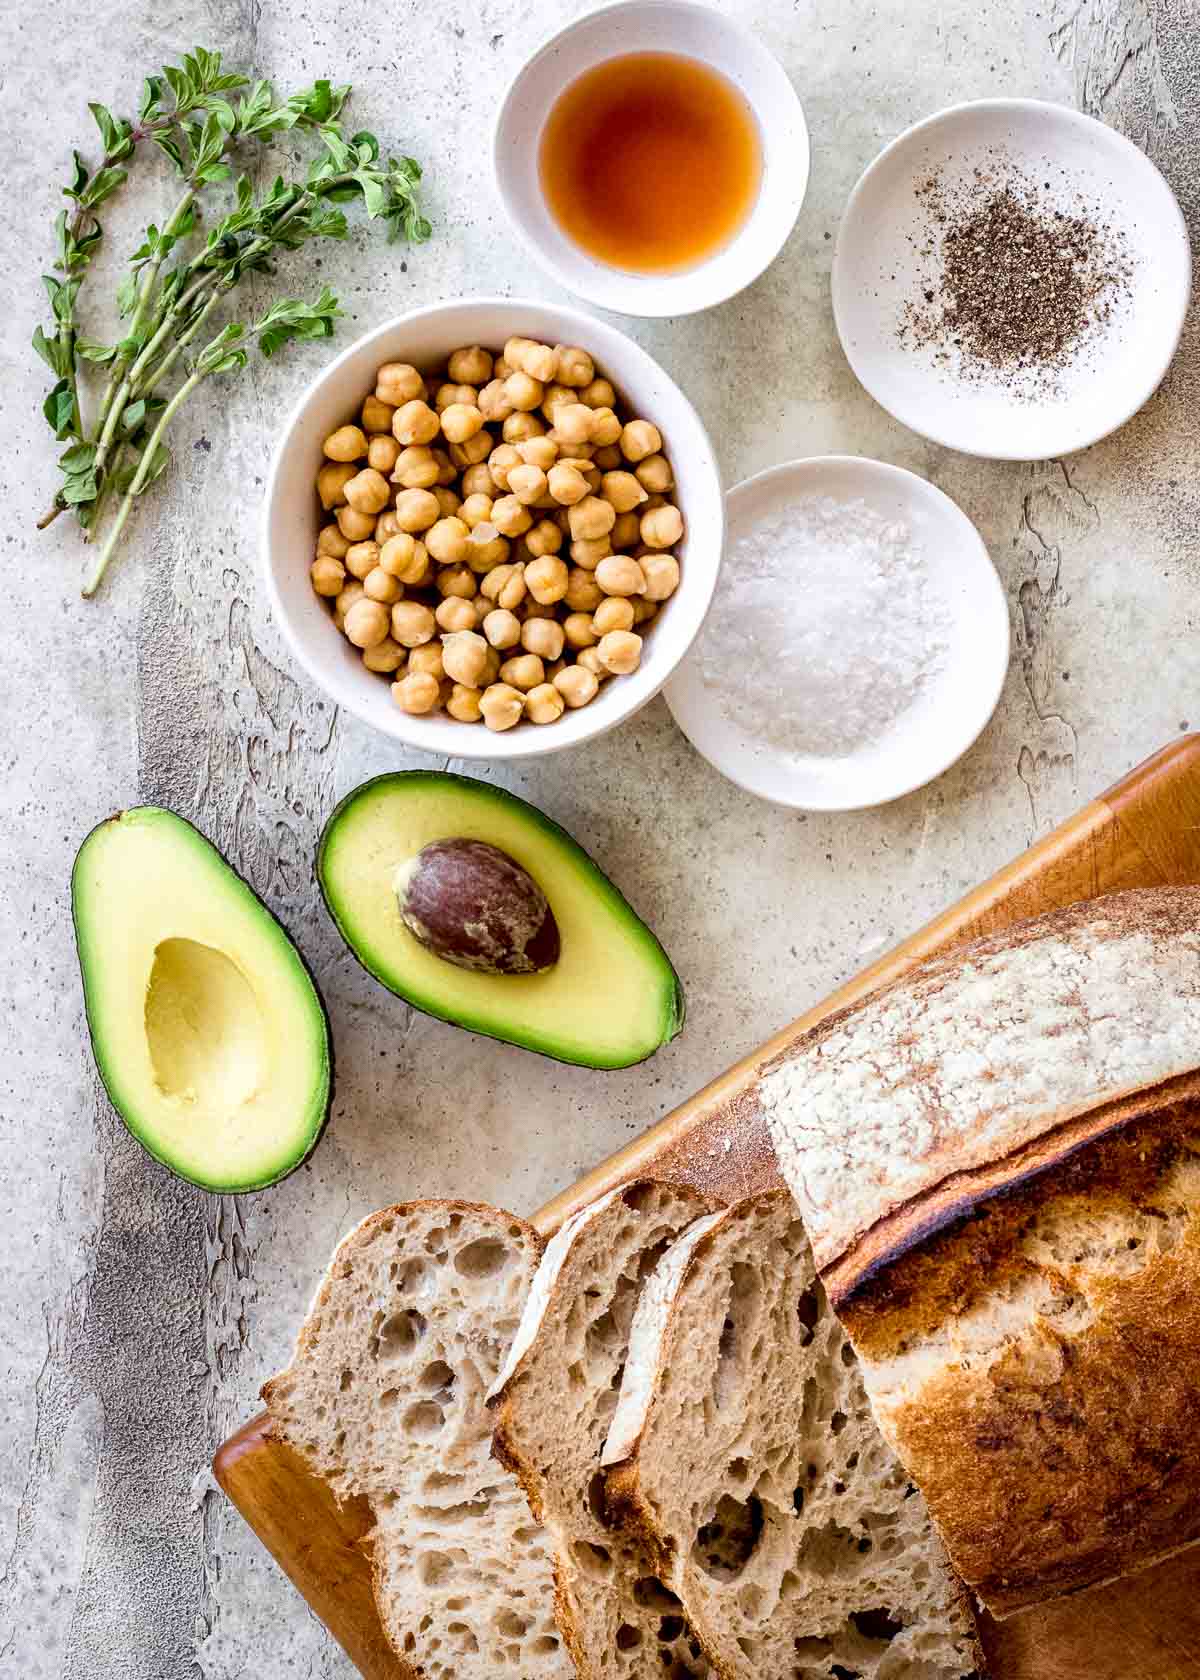 Συστατικά για vegan τοστ αβοκάντο με υψηλή περιεκτικότητα σε πρωτεΐνες, συμπεριλαμβανομένου ψωμιού με προζύμι, αβοκάντο, ρεβίθια και μυρωδικά.